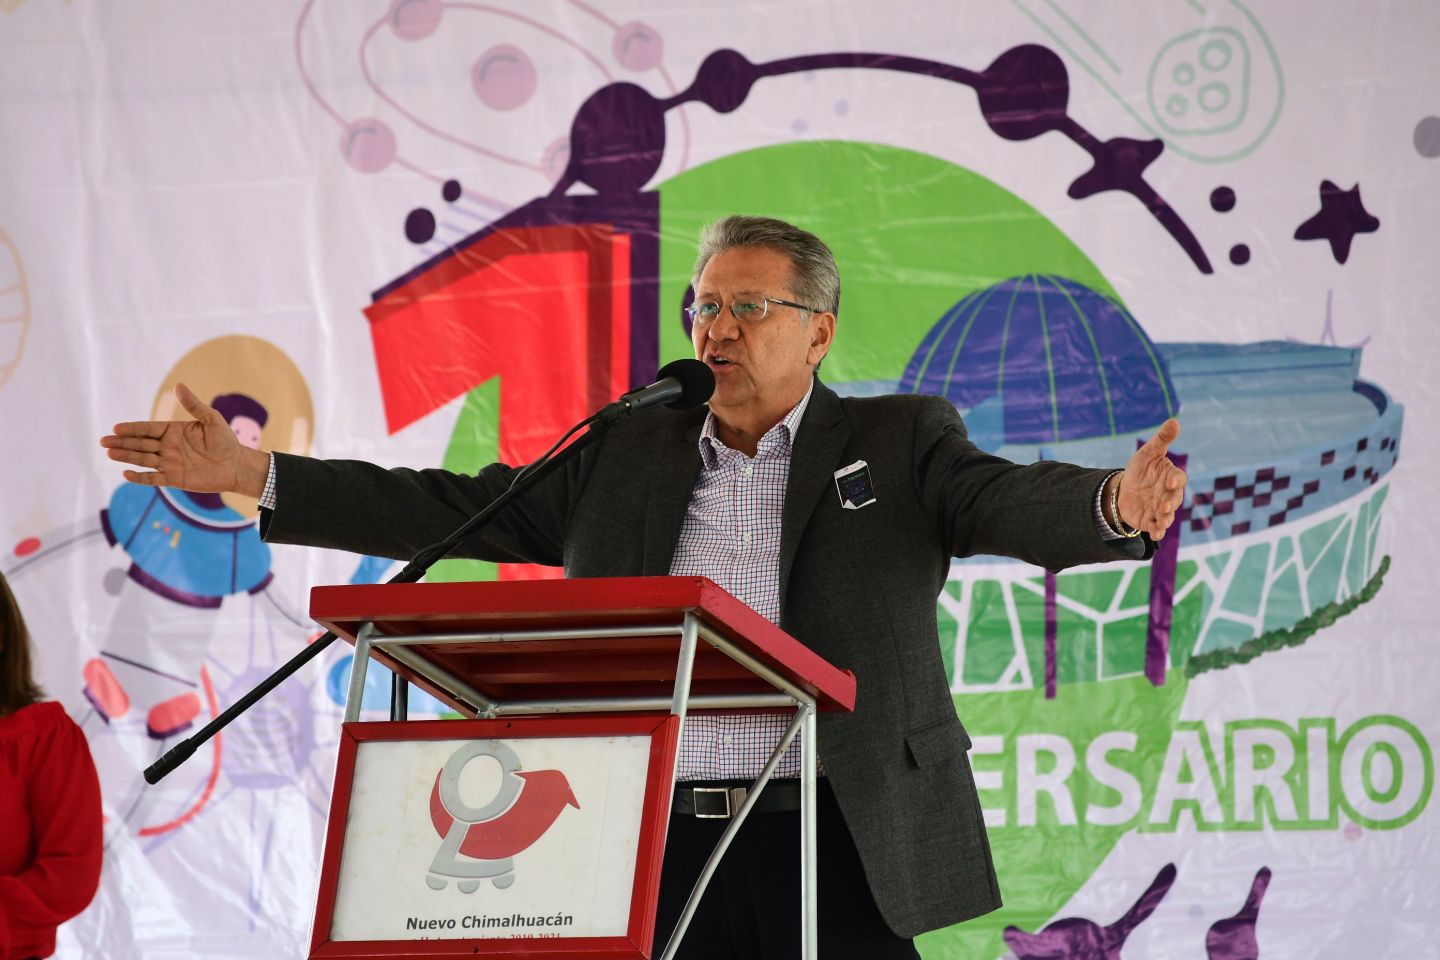 Celebramos primer aniversario del Planetario Digital Chimalhuacán